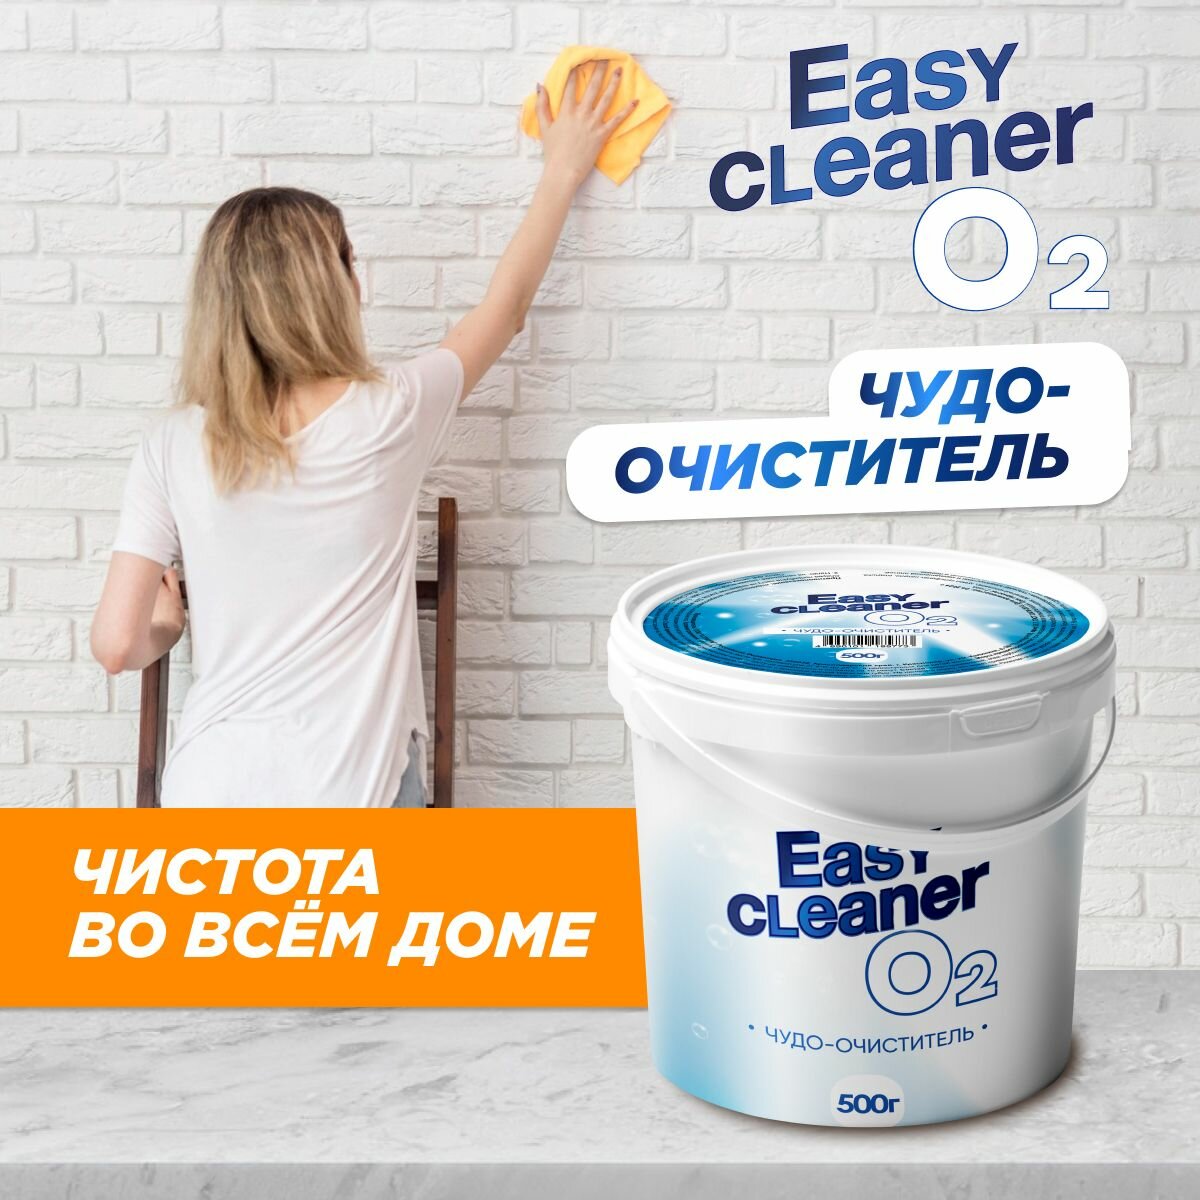 Еasy Cleaner O2 паста для чистки поверхностей универсальная - фотография № 2